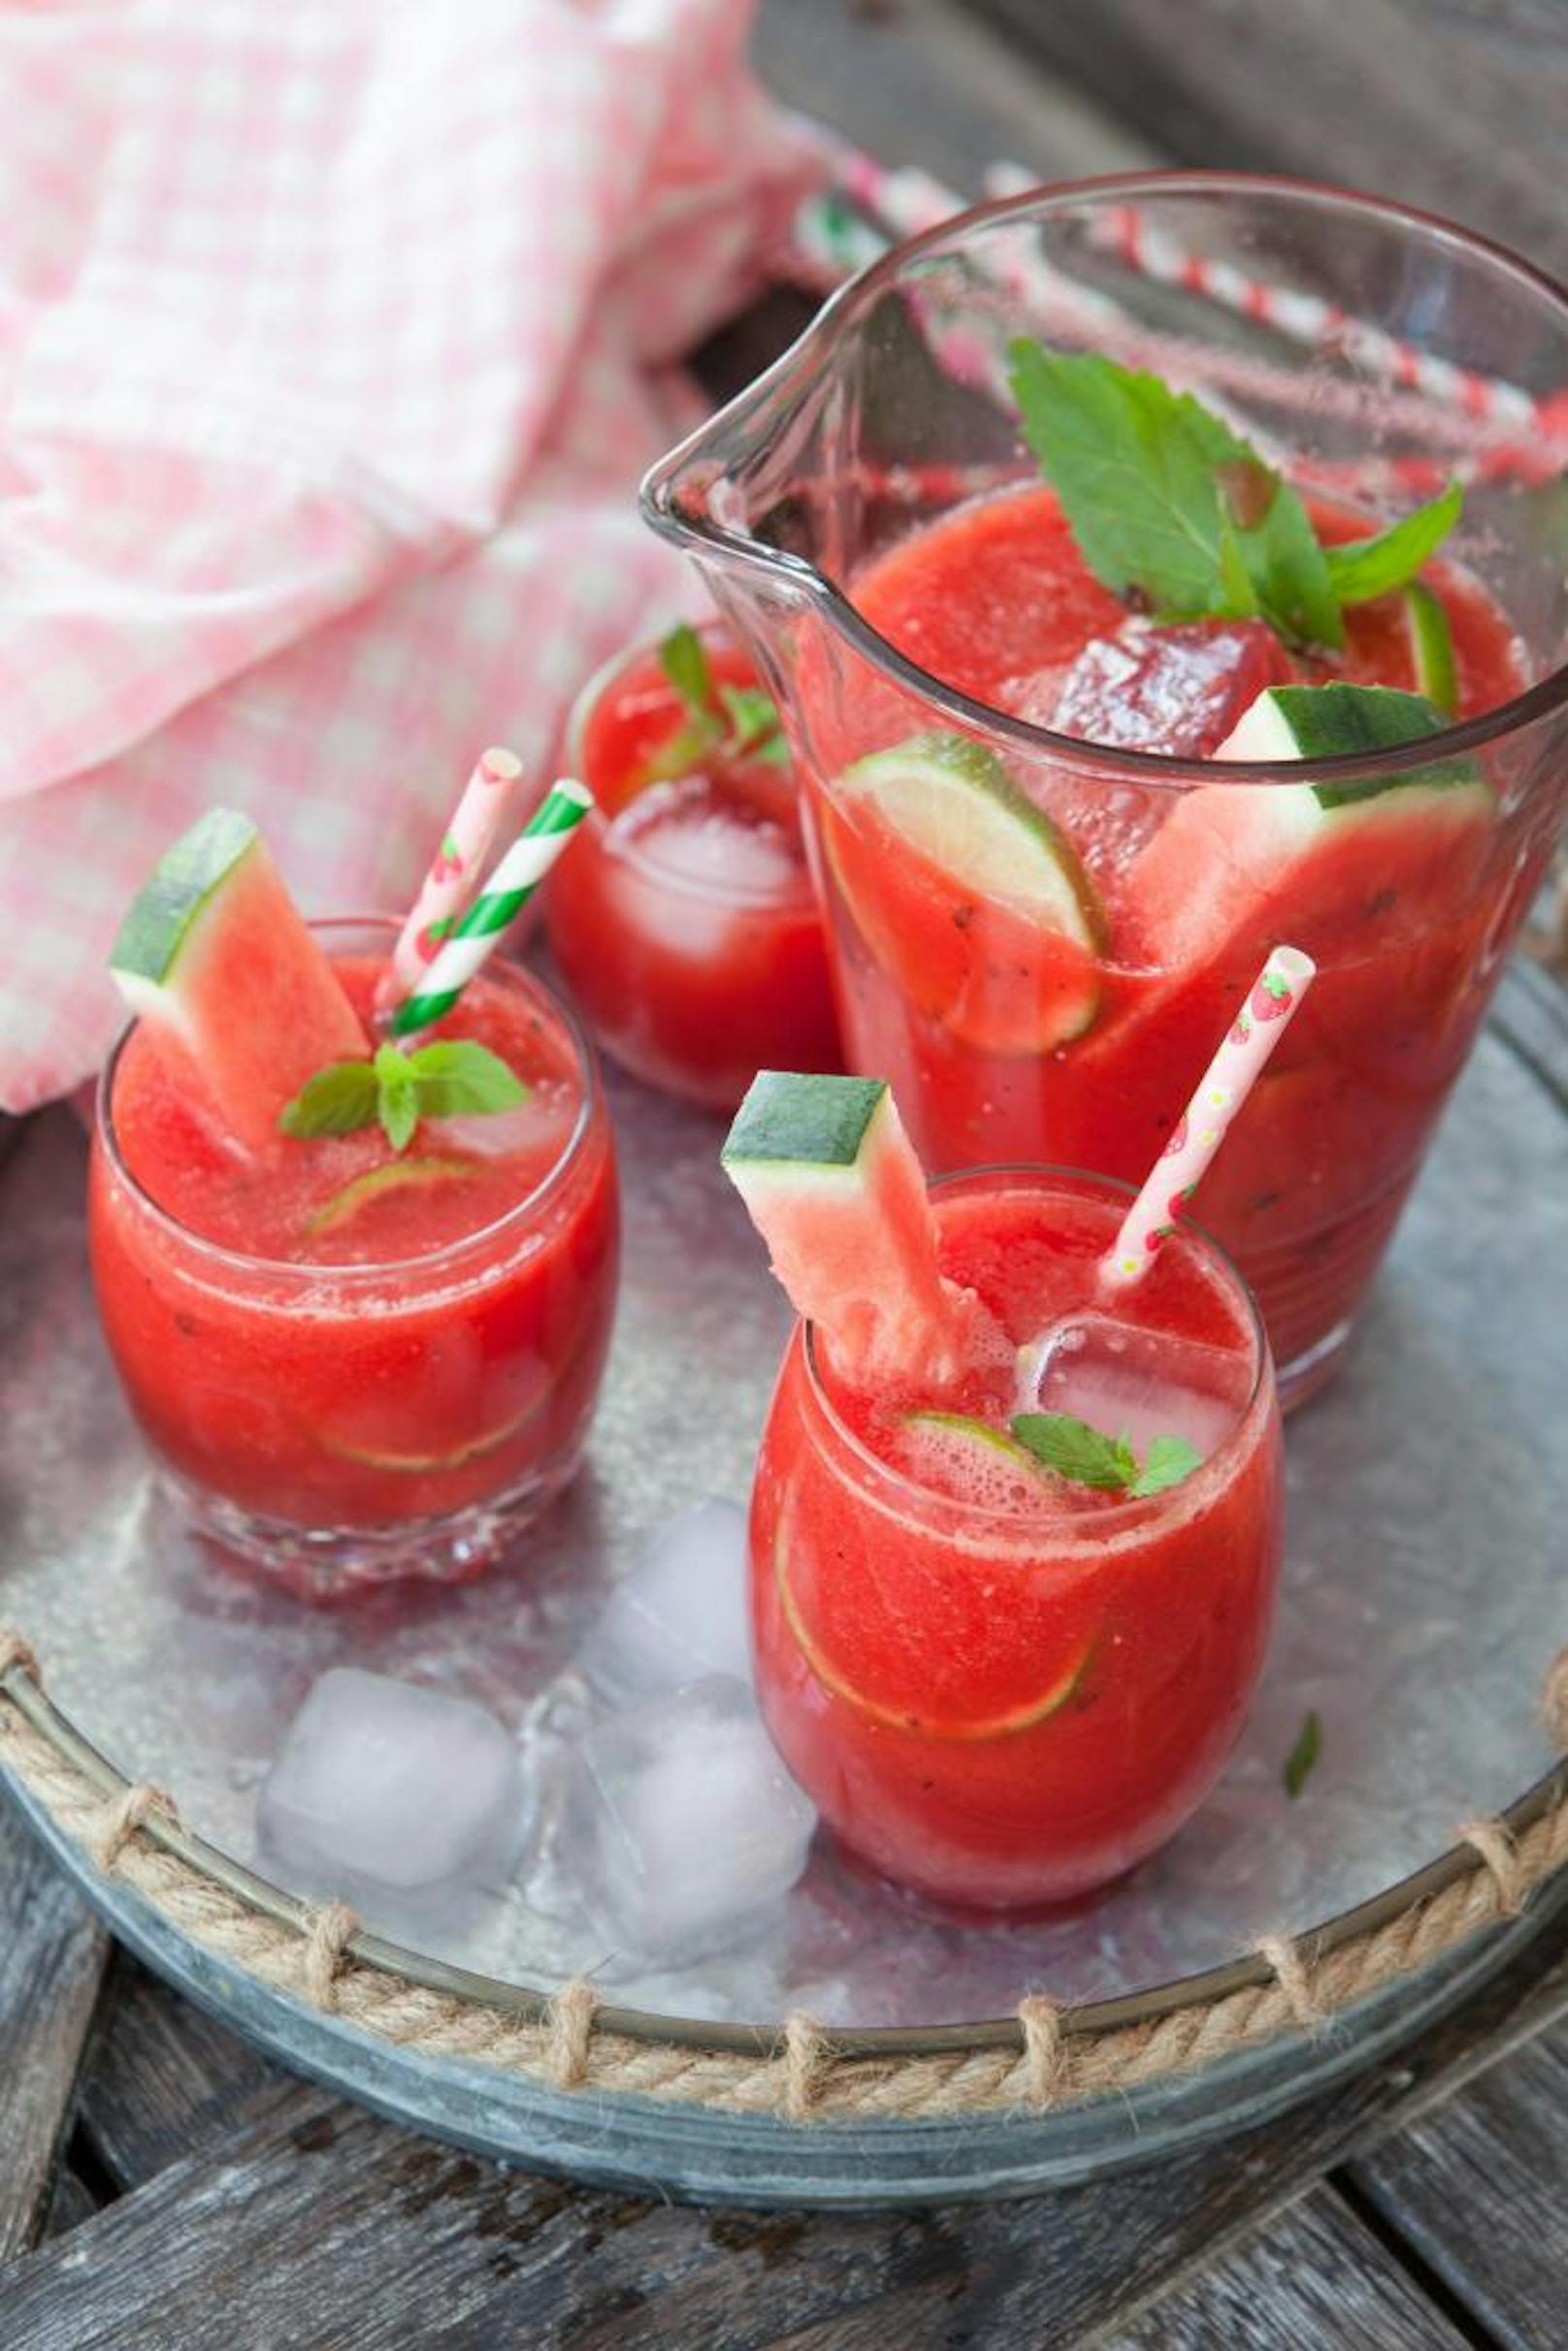 Ein fruchtiger Cocktail mit Wassermelonen und Limetten - wohlgemerkt ohne Alkohol - lässt uns einen kühlen Kopf bewahren.